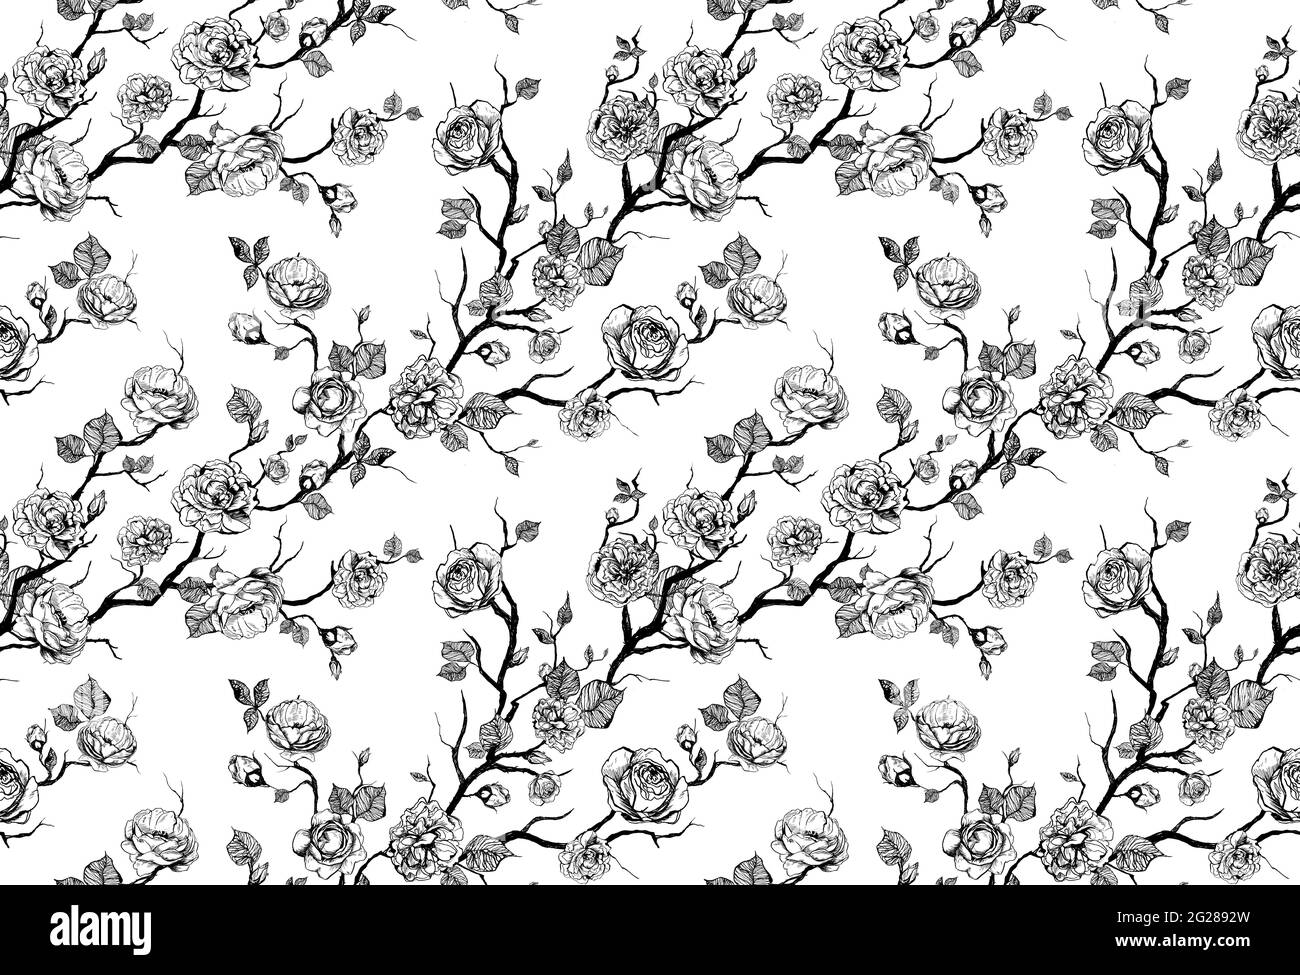 Motif floral dessiné à la main avec roses et feuilles sur fond blanc Banque D'Images